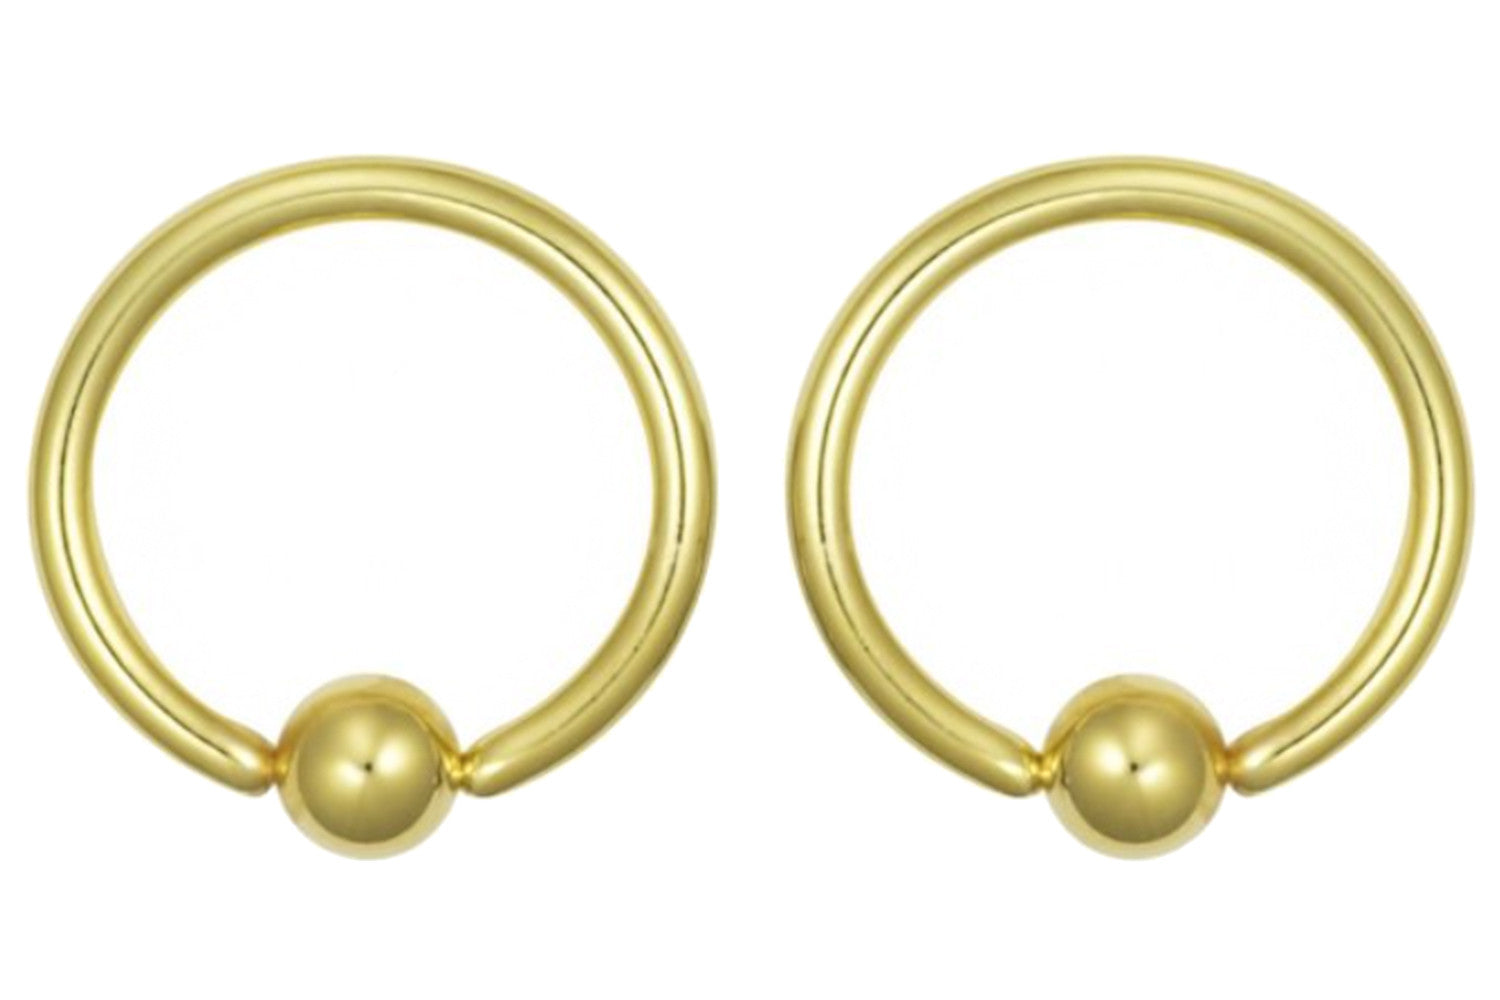 Pair of Gold Captive Bead Earrings